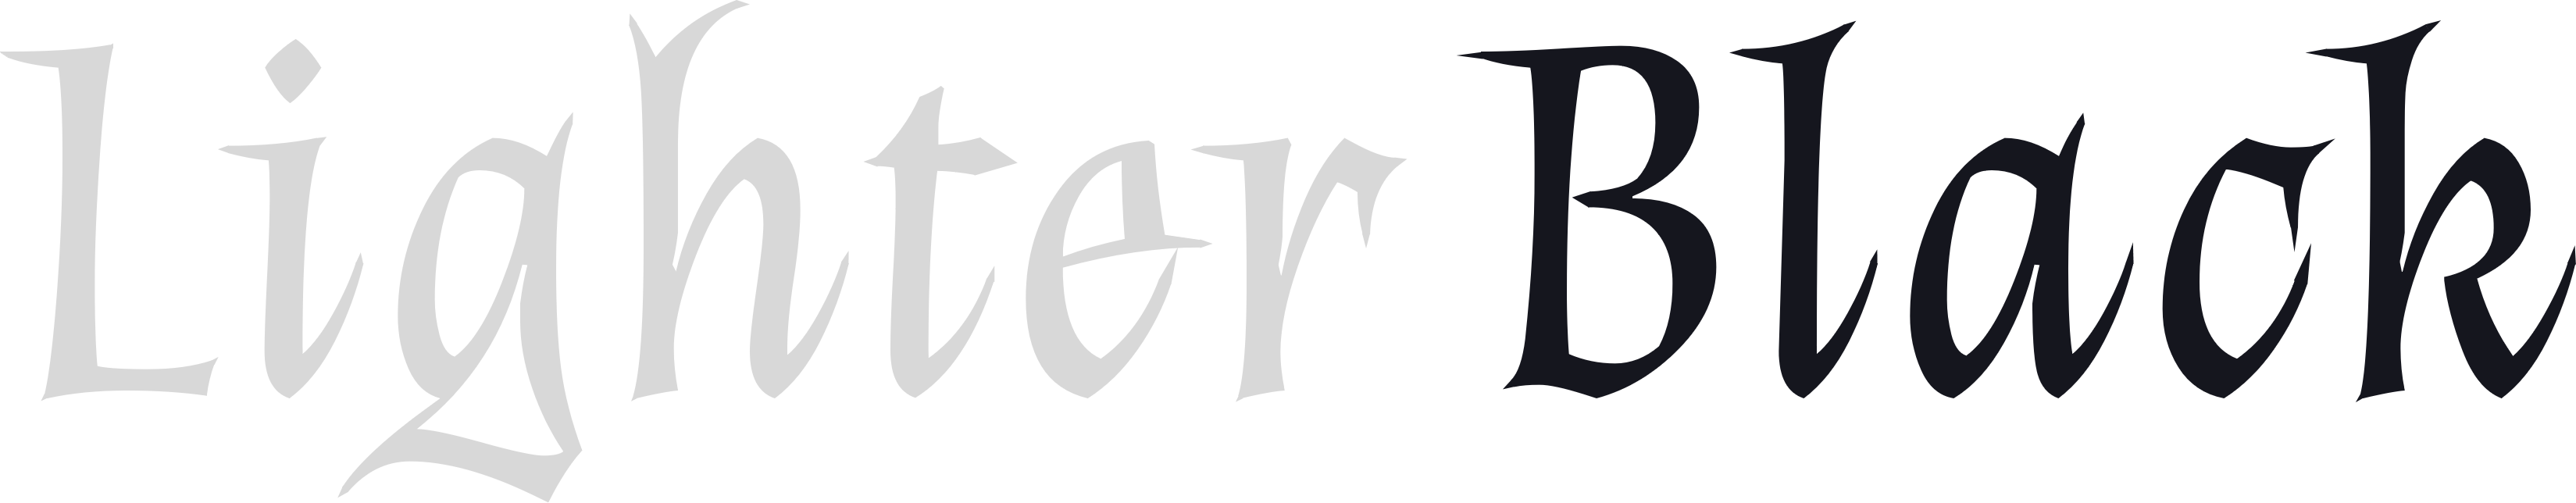 Lighter Black logo